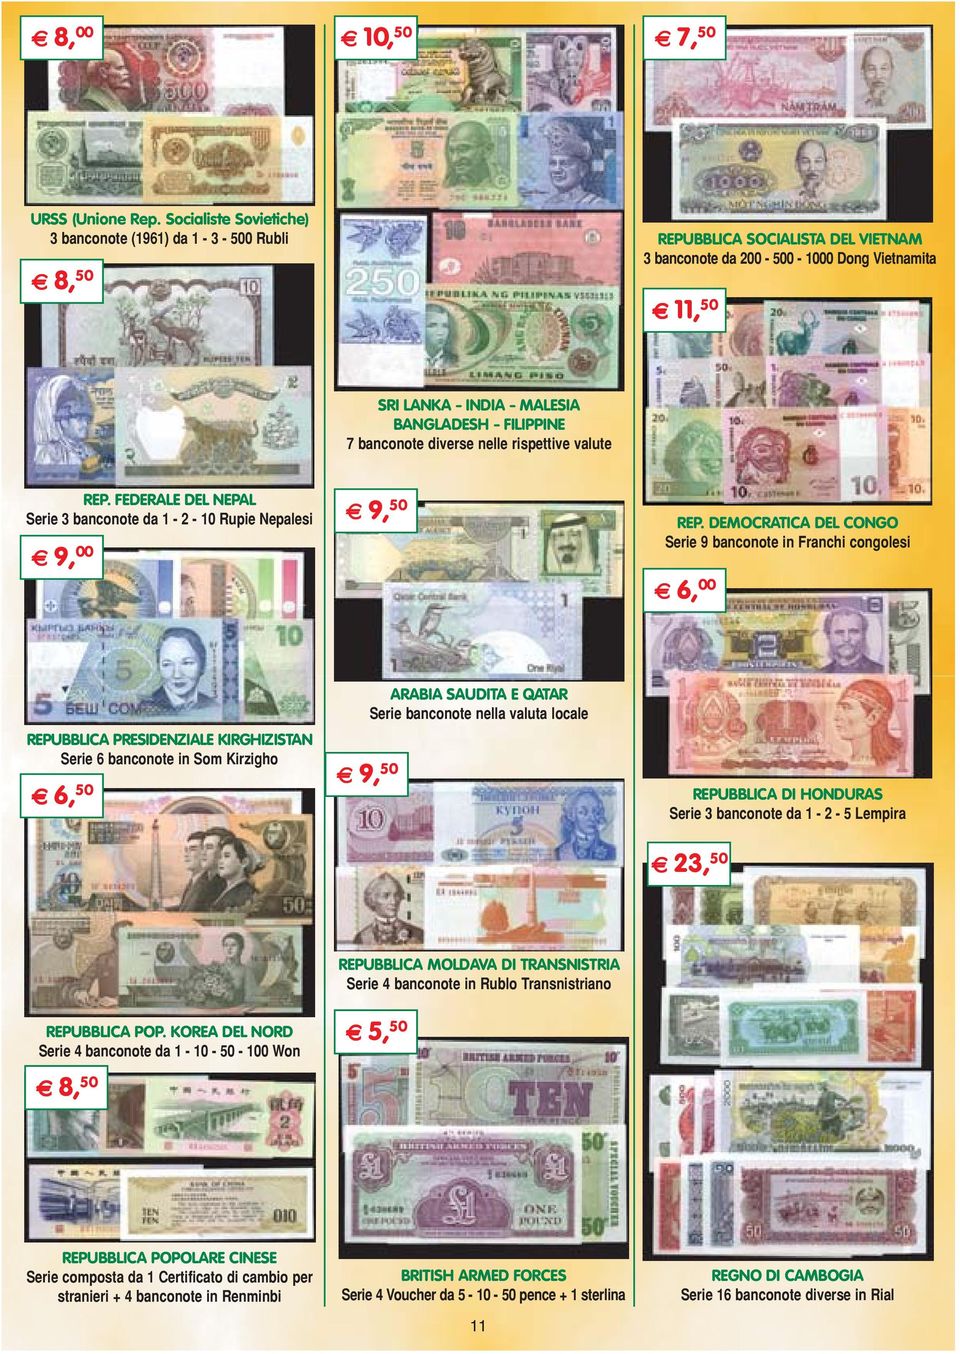 FILIPPINE 7 banconote diverse nelle rispettive valute REP. FEDERALE DEL NEPAL Serie 3 banconote da 1-2 - 10 Rupie Nepalesi E 9, 00 E 9, 50 REP.